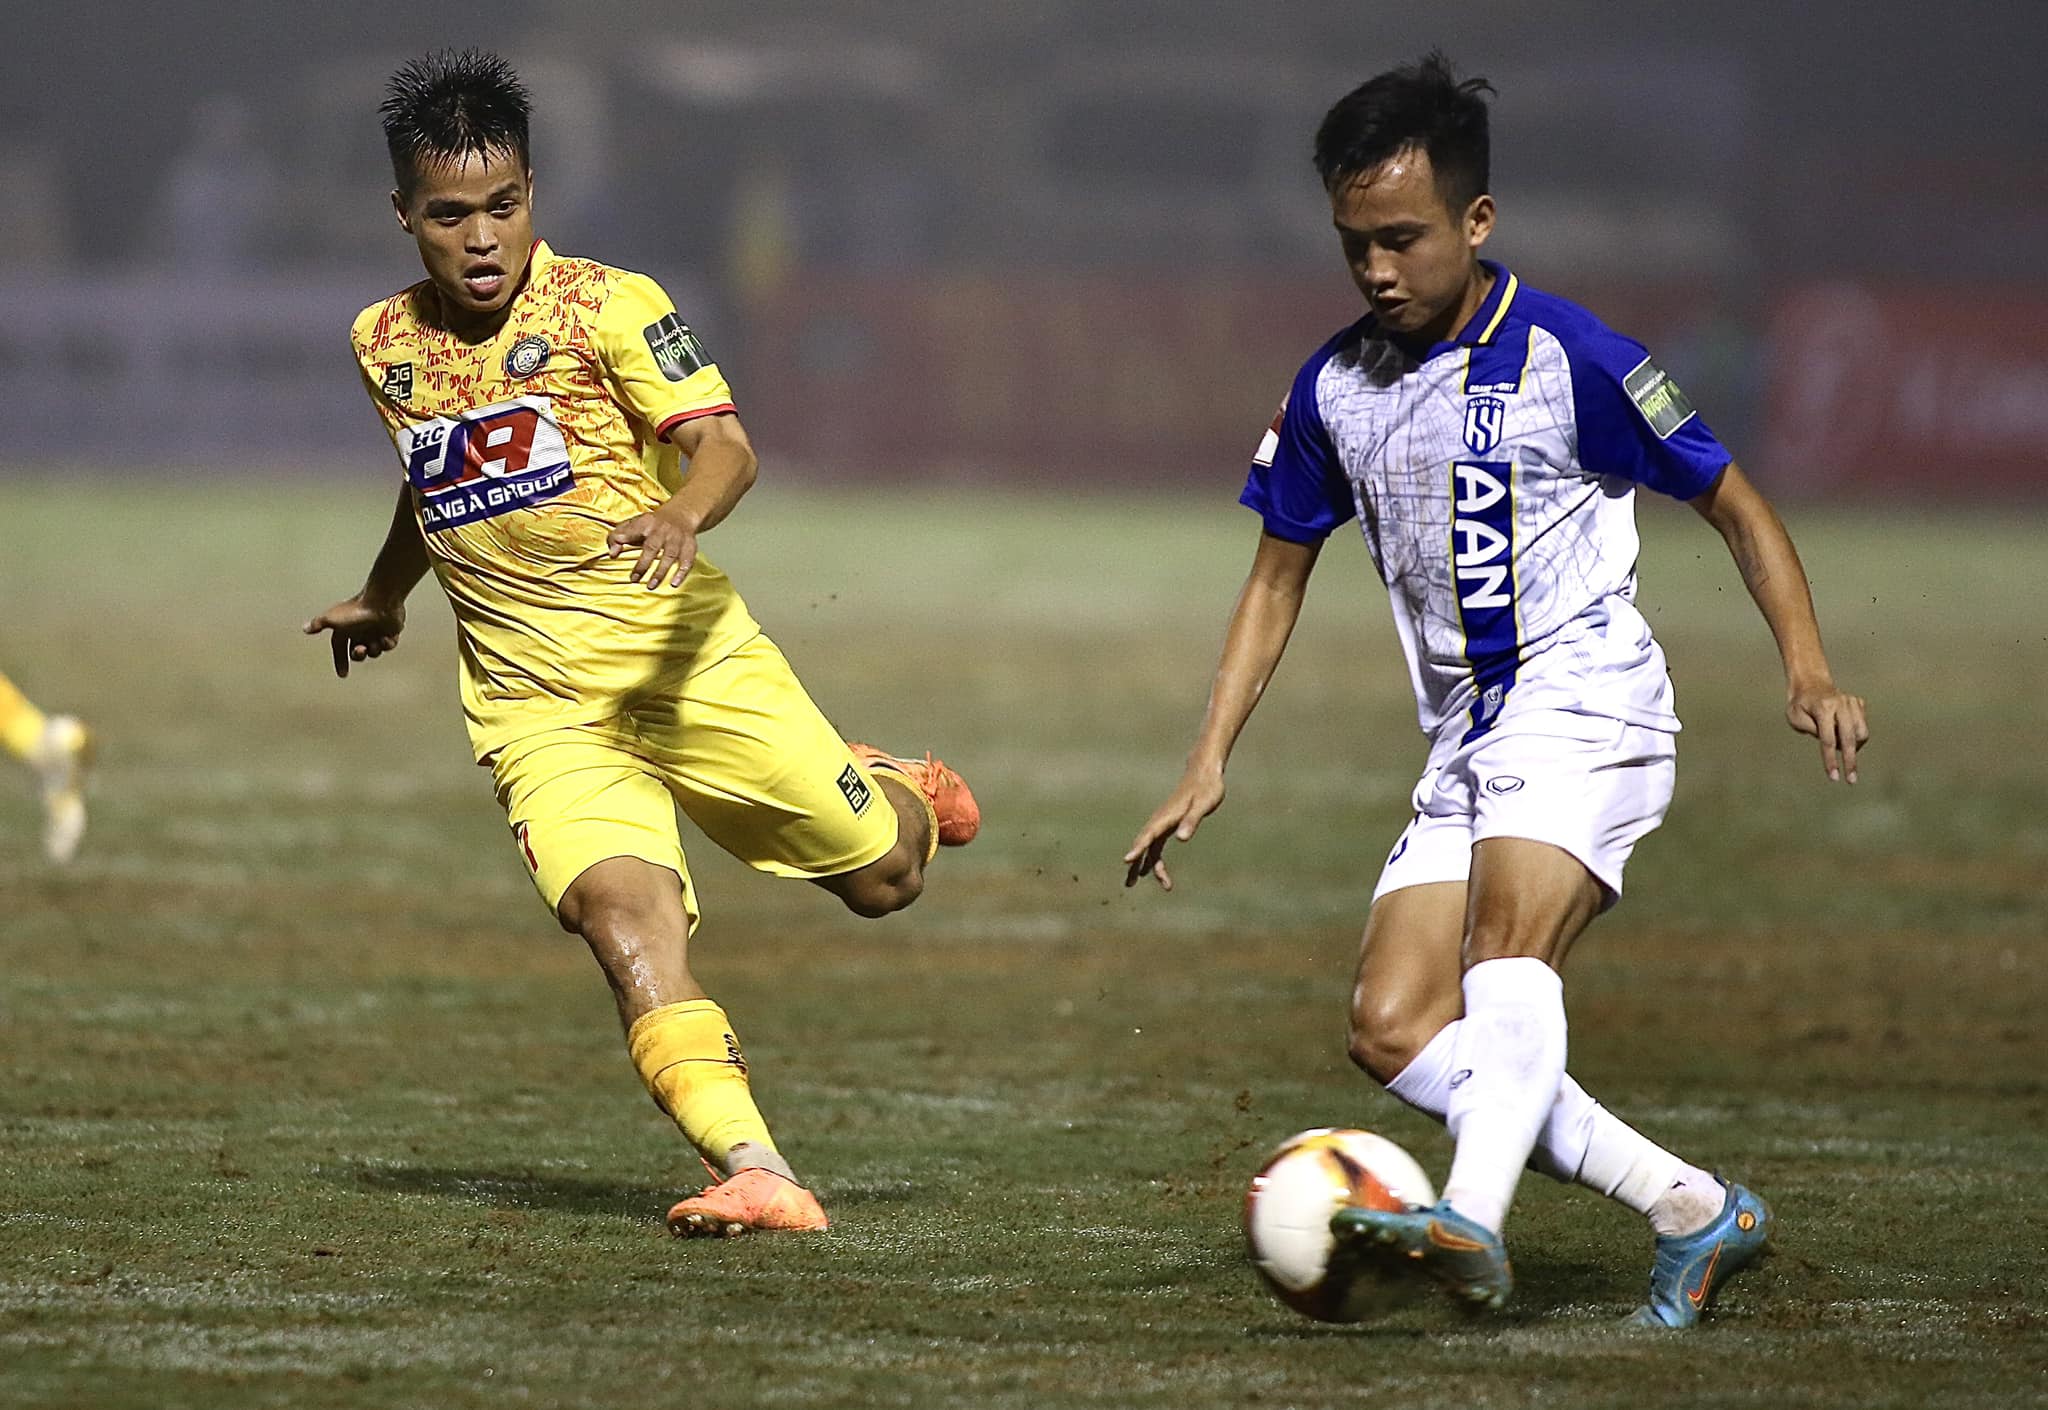 Sông Lam Nghệ An 13 trận liên tiếp không thắng trên sân Thanh Hóa ở V-League